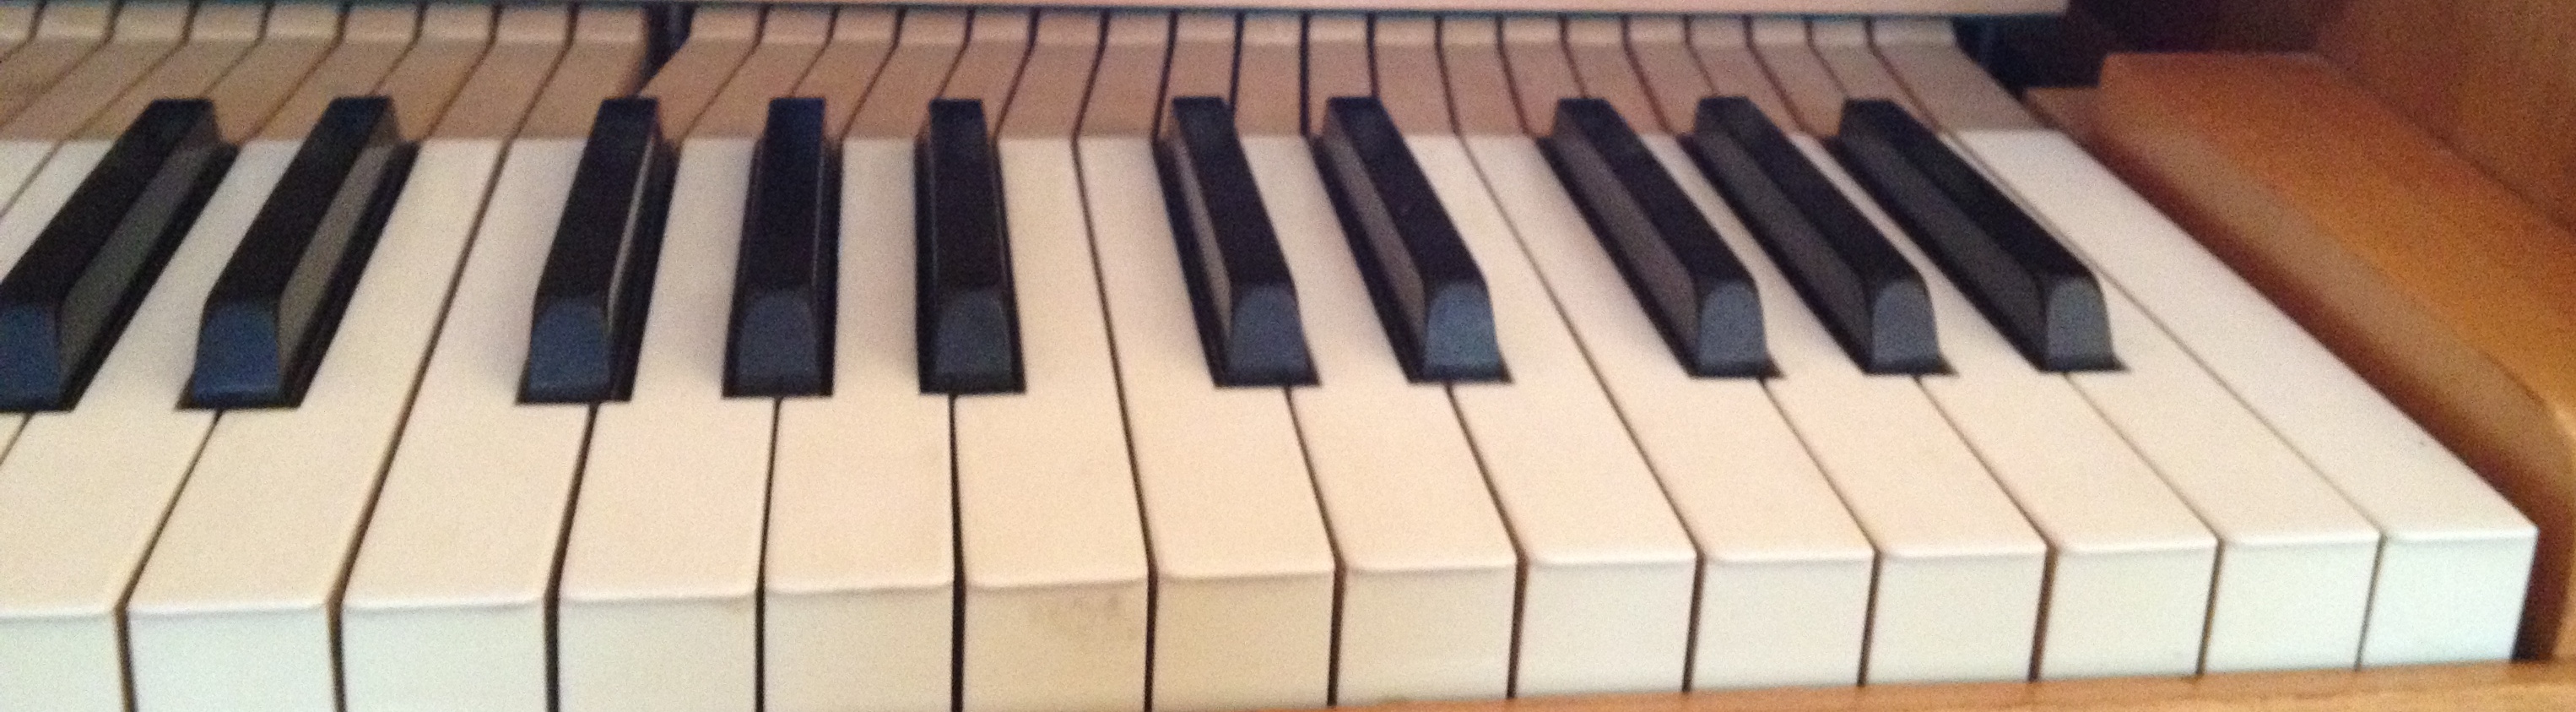 schatten in de piano verstopt